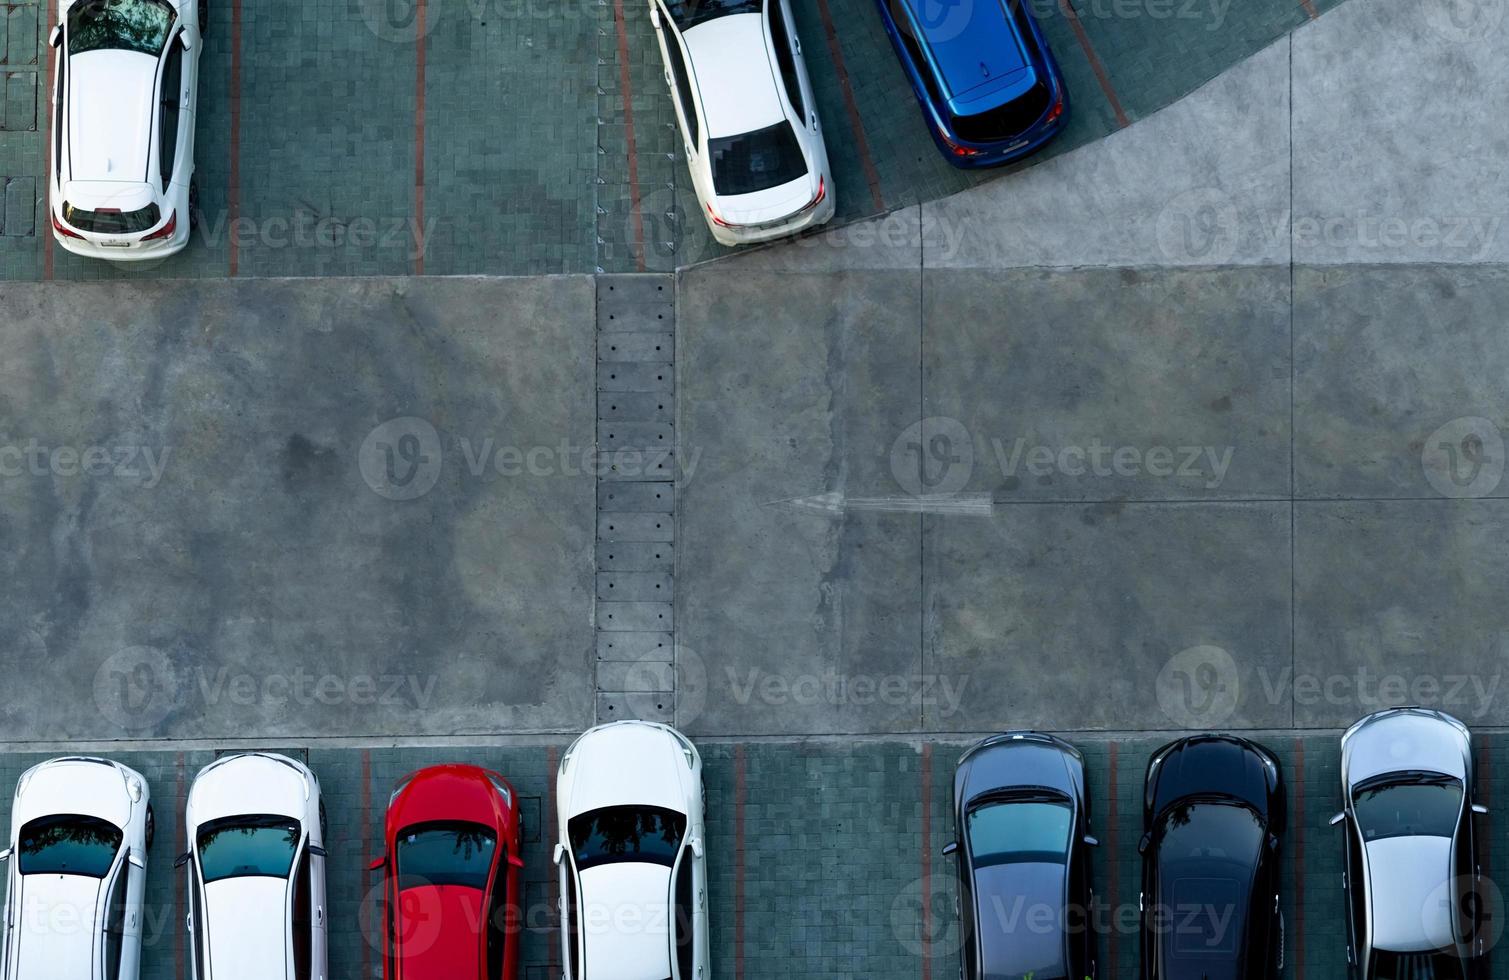 parcheggio per auto in cemento con vista dall'alto. vista aerea dell'auto parcheggiata nel parcheggio dell'appartamento. posto auto esterno con posto libero. segnale stradale a senso unico su strada. vista dall'alto parcheggio esterno. foto